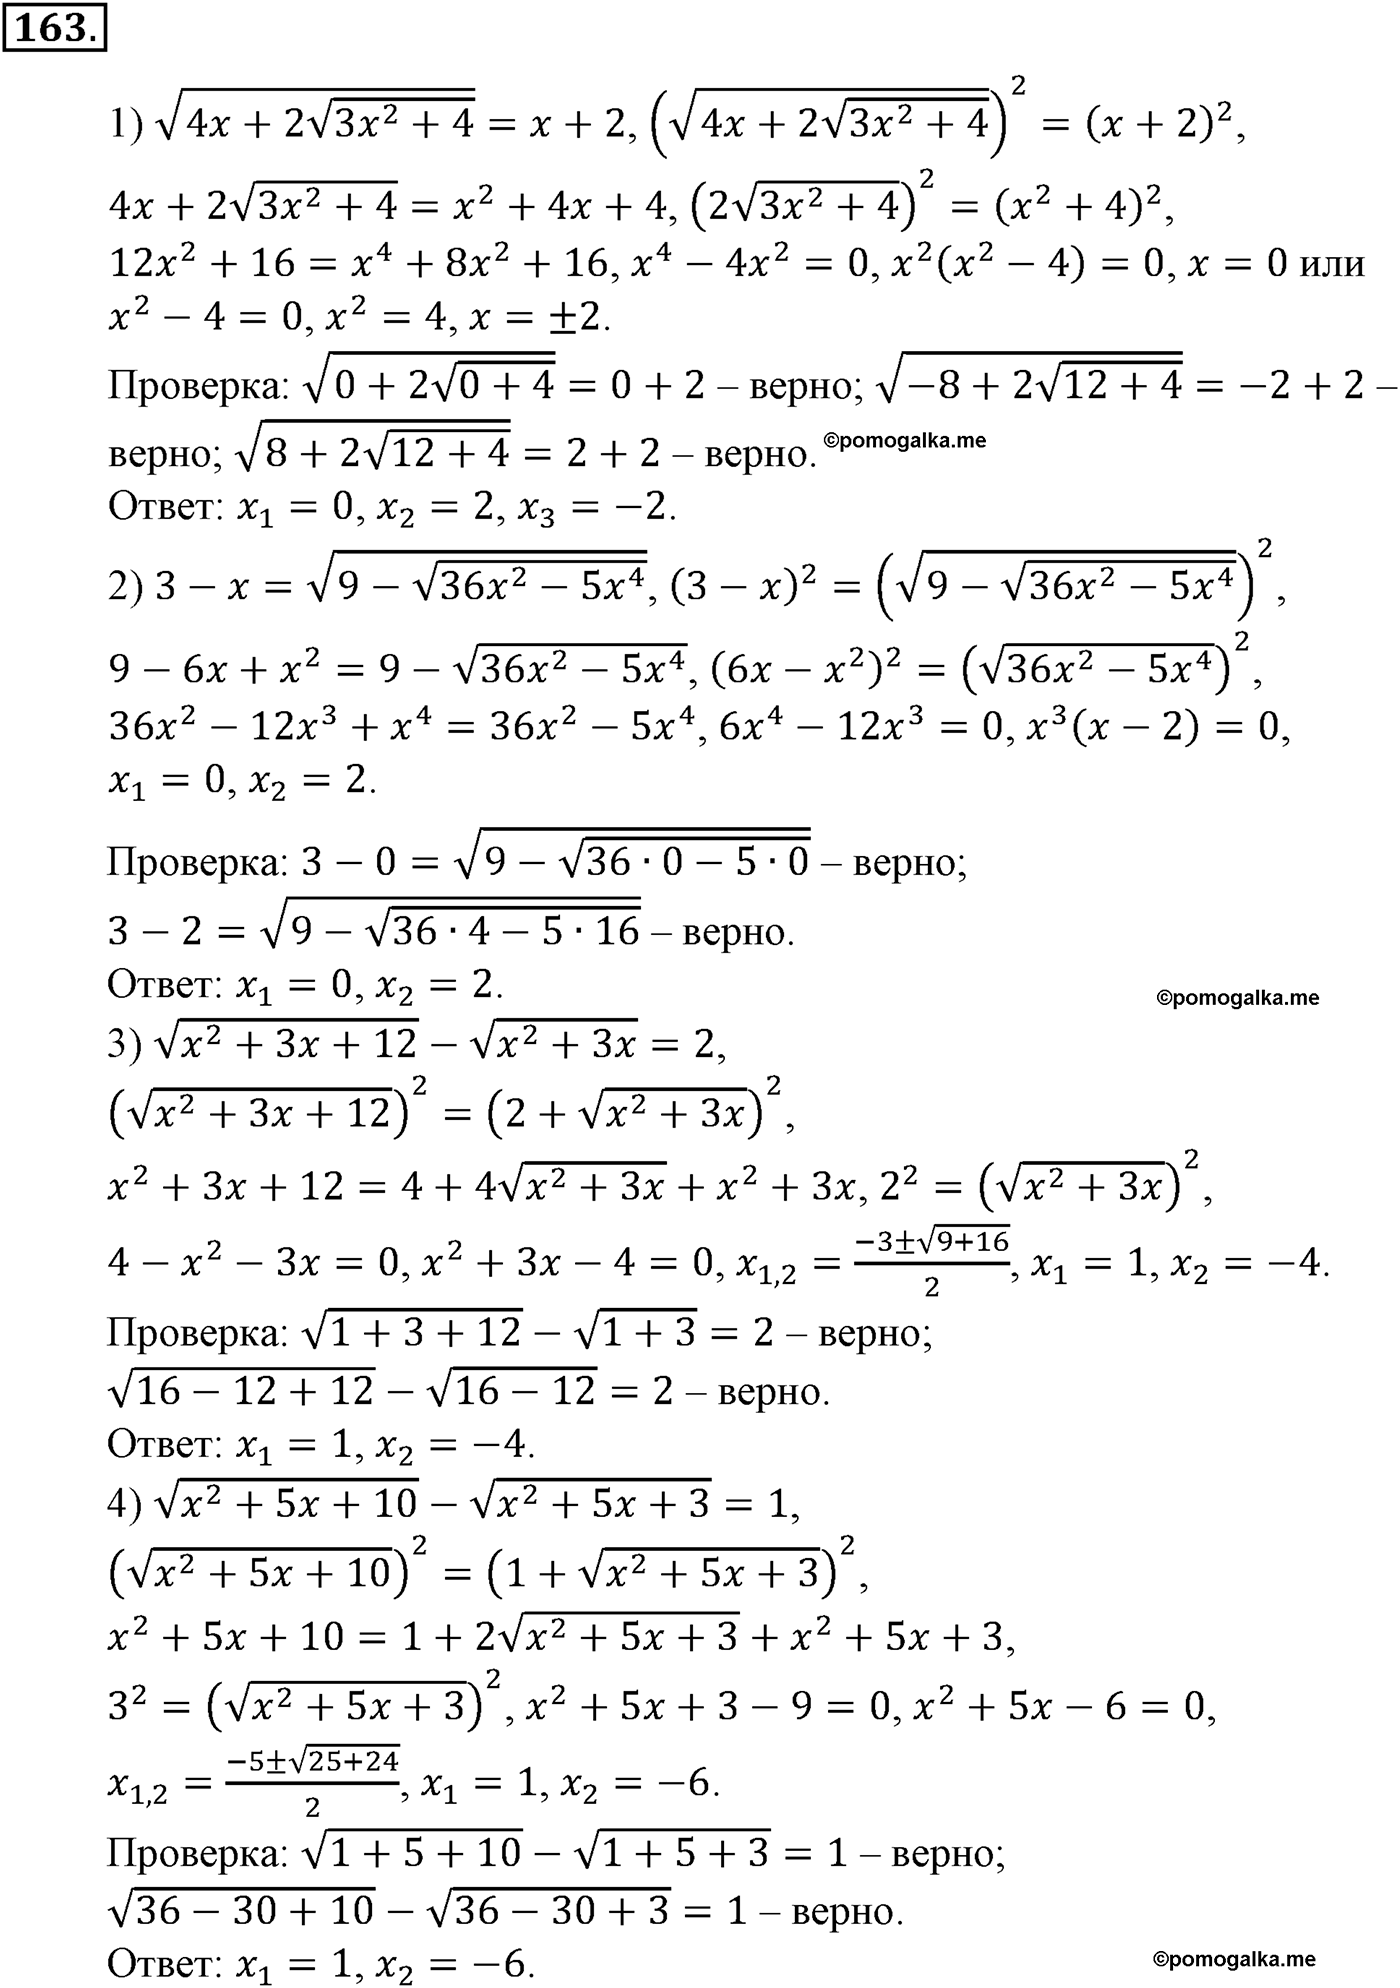 разбор задачи №163 по алгебре за 10-11 класс из учебника Алимова, Колягина